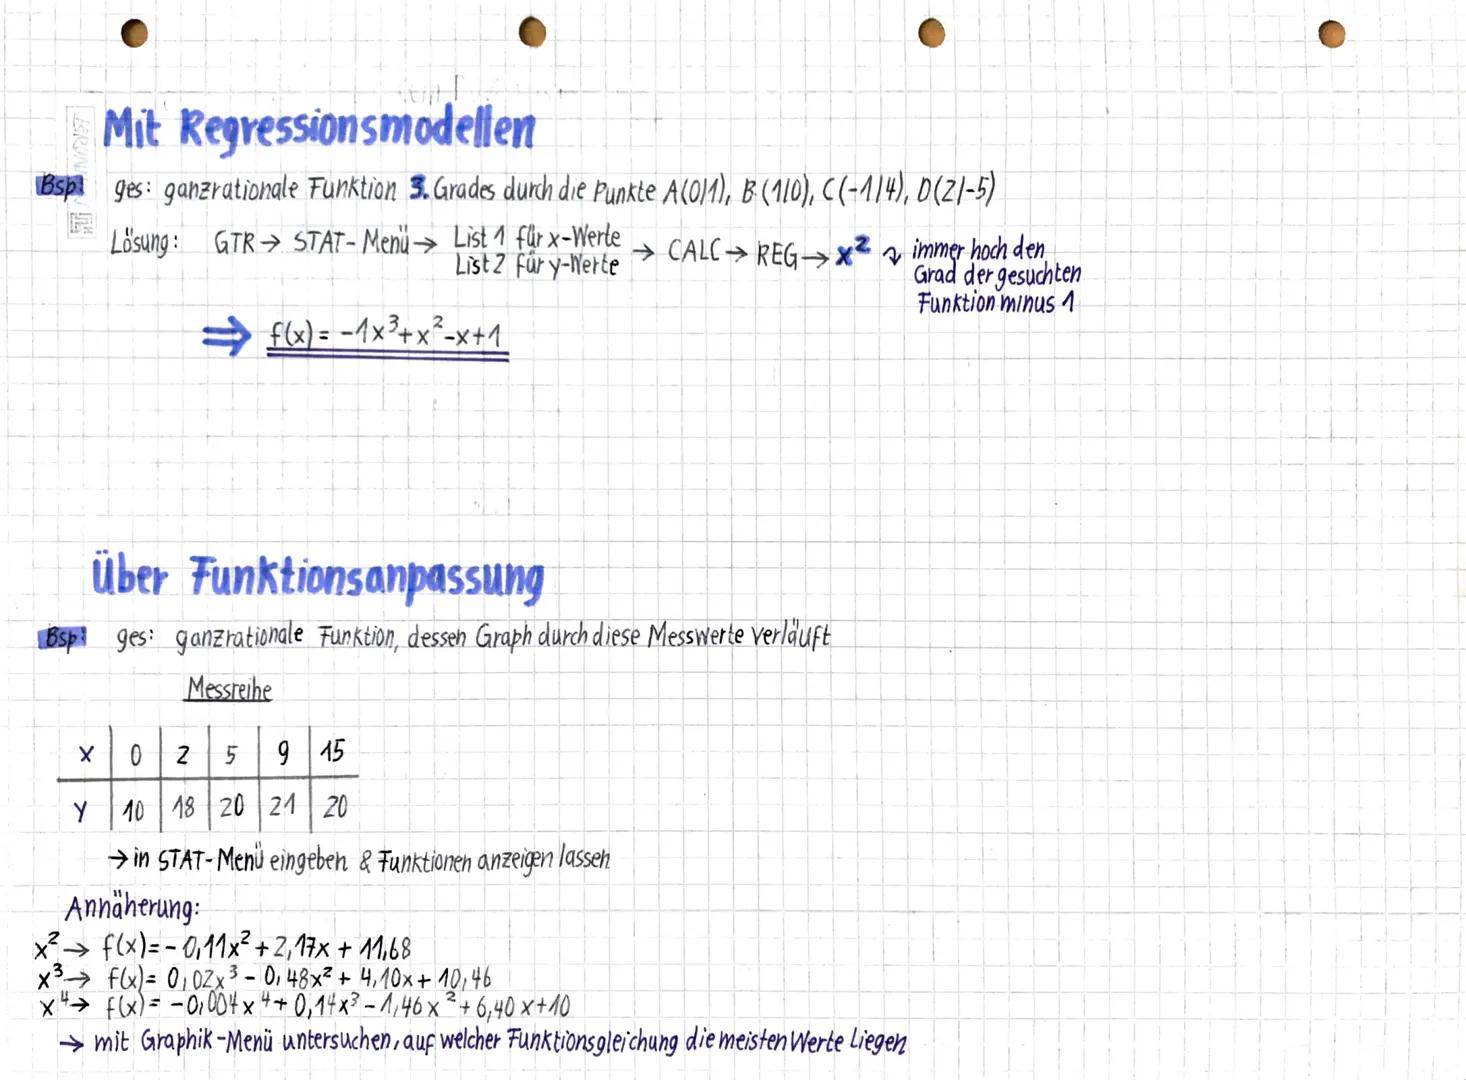 Bestimmung ganerationaler Funktionen
Mit Gleichungssystem
Bsp geg: A (011), B(1/2); C(2/7)
ges: ganzrationale Funktion 2. Grades, die durch 